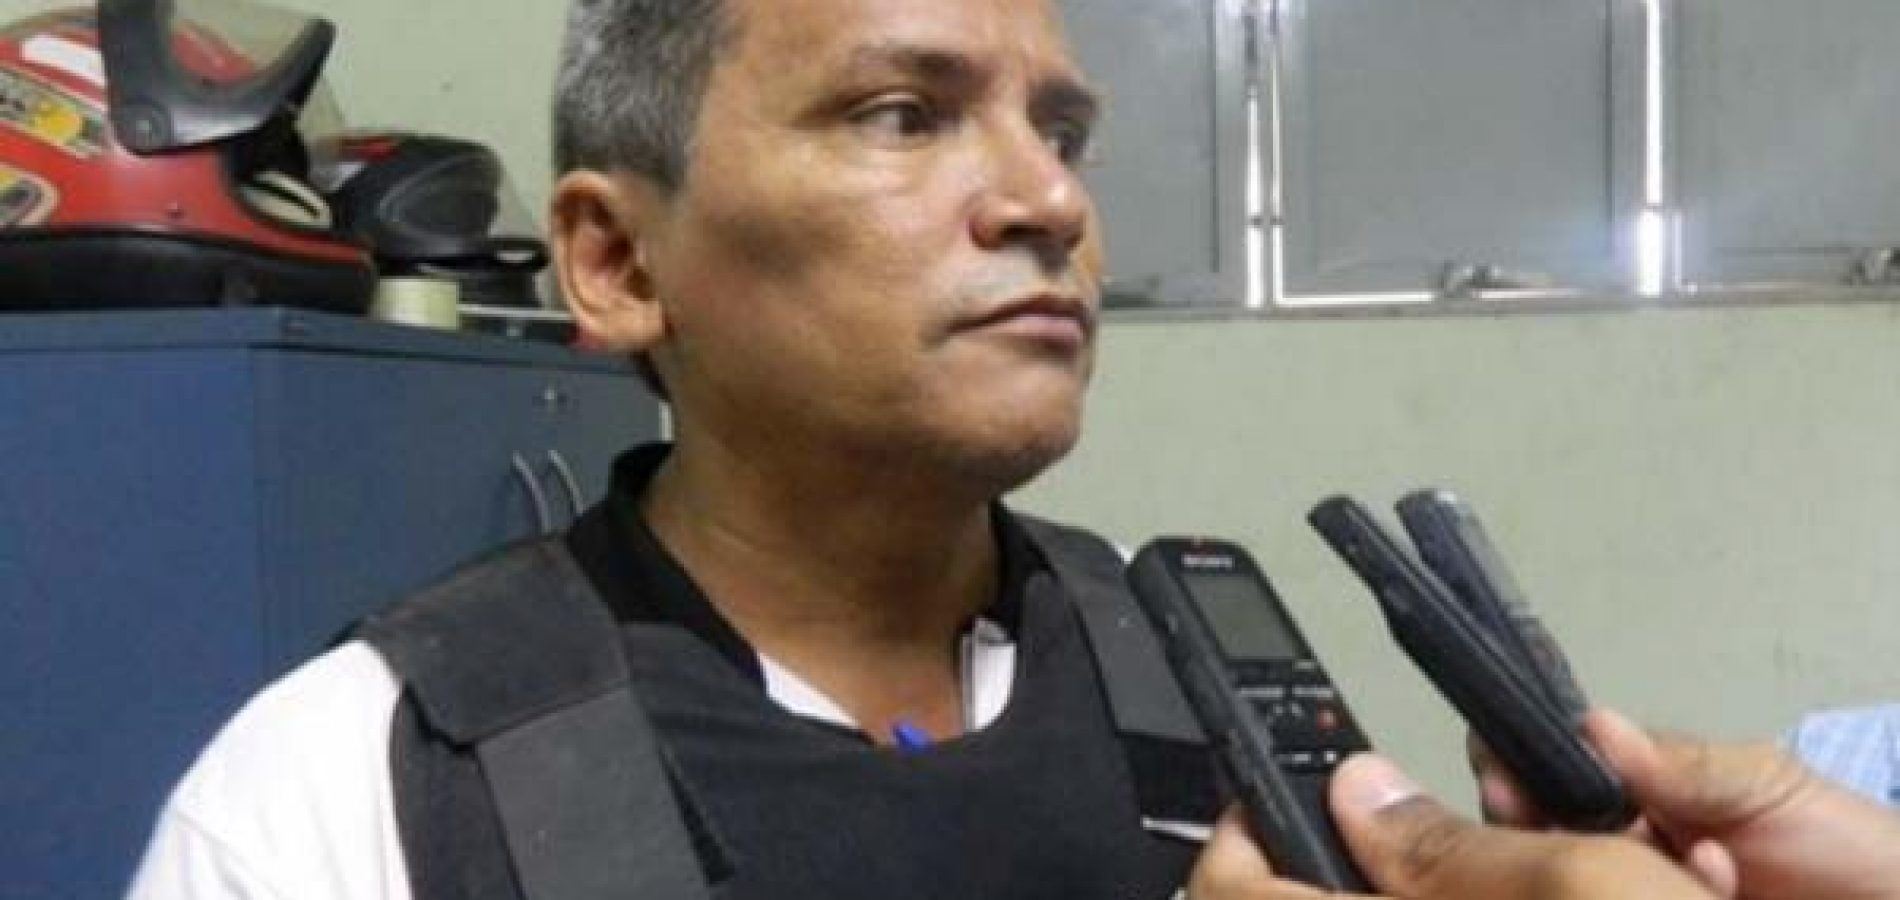 Escrivão da Civil de Picos é preso em flagrante ao roubar pneus de veículo apreendido